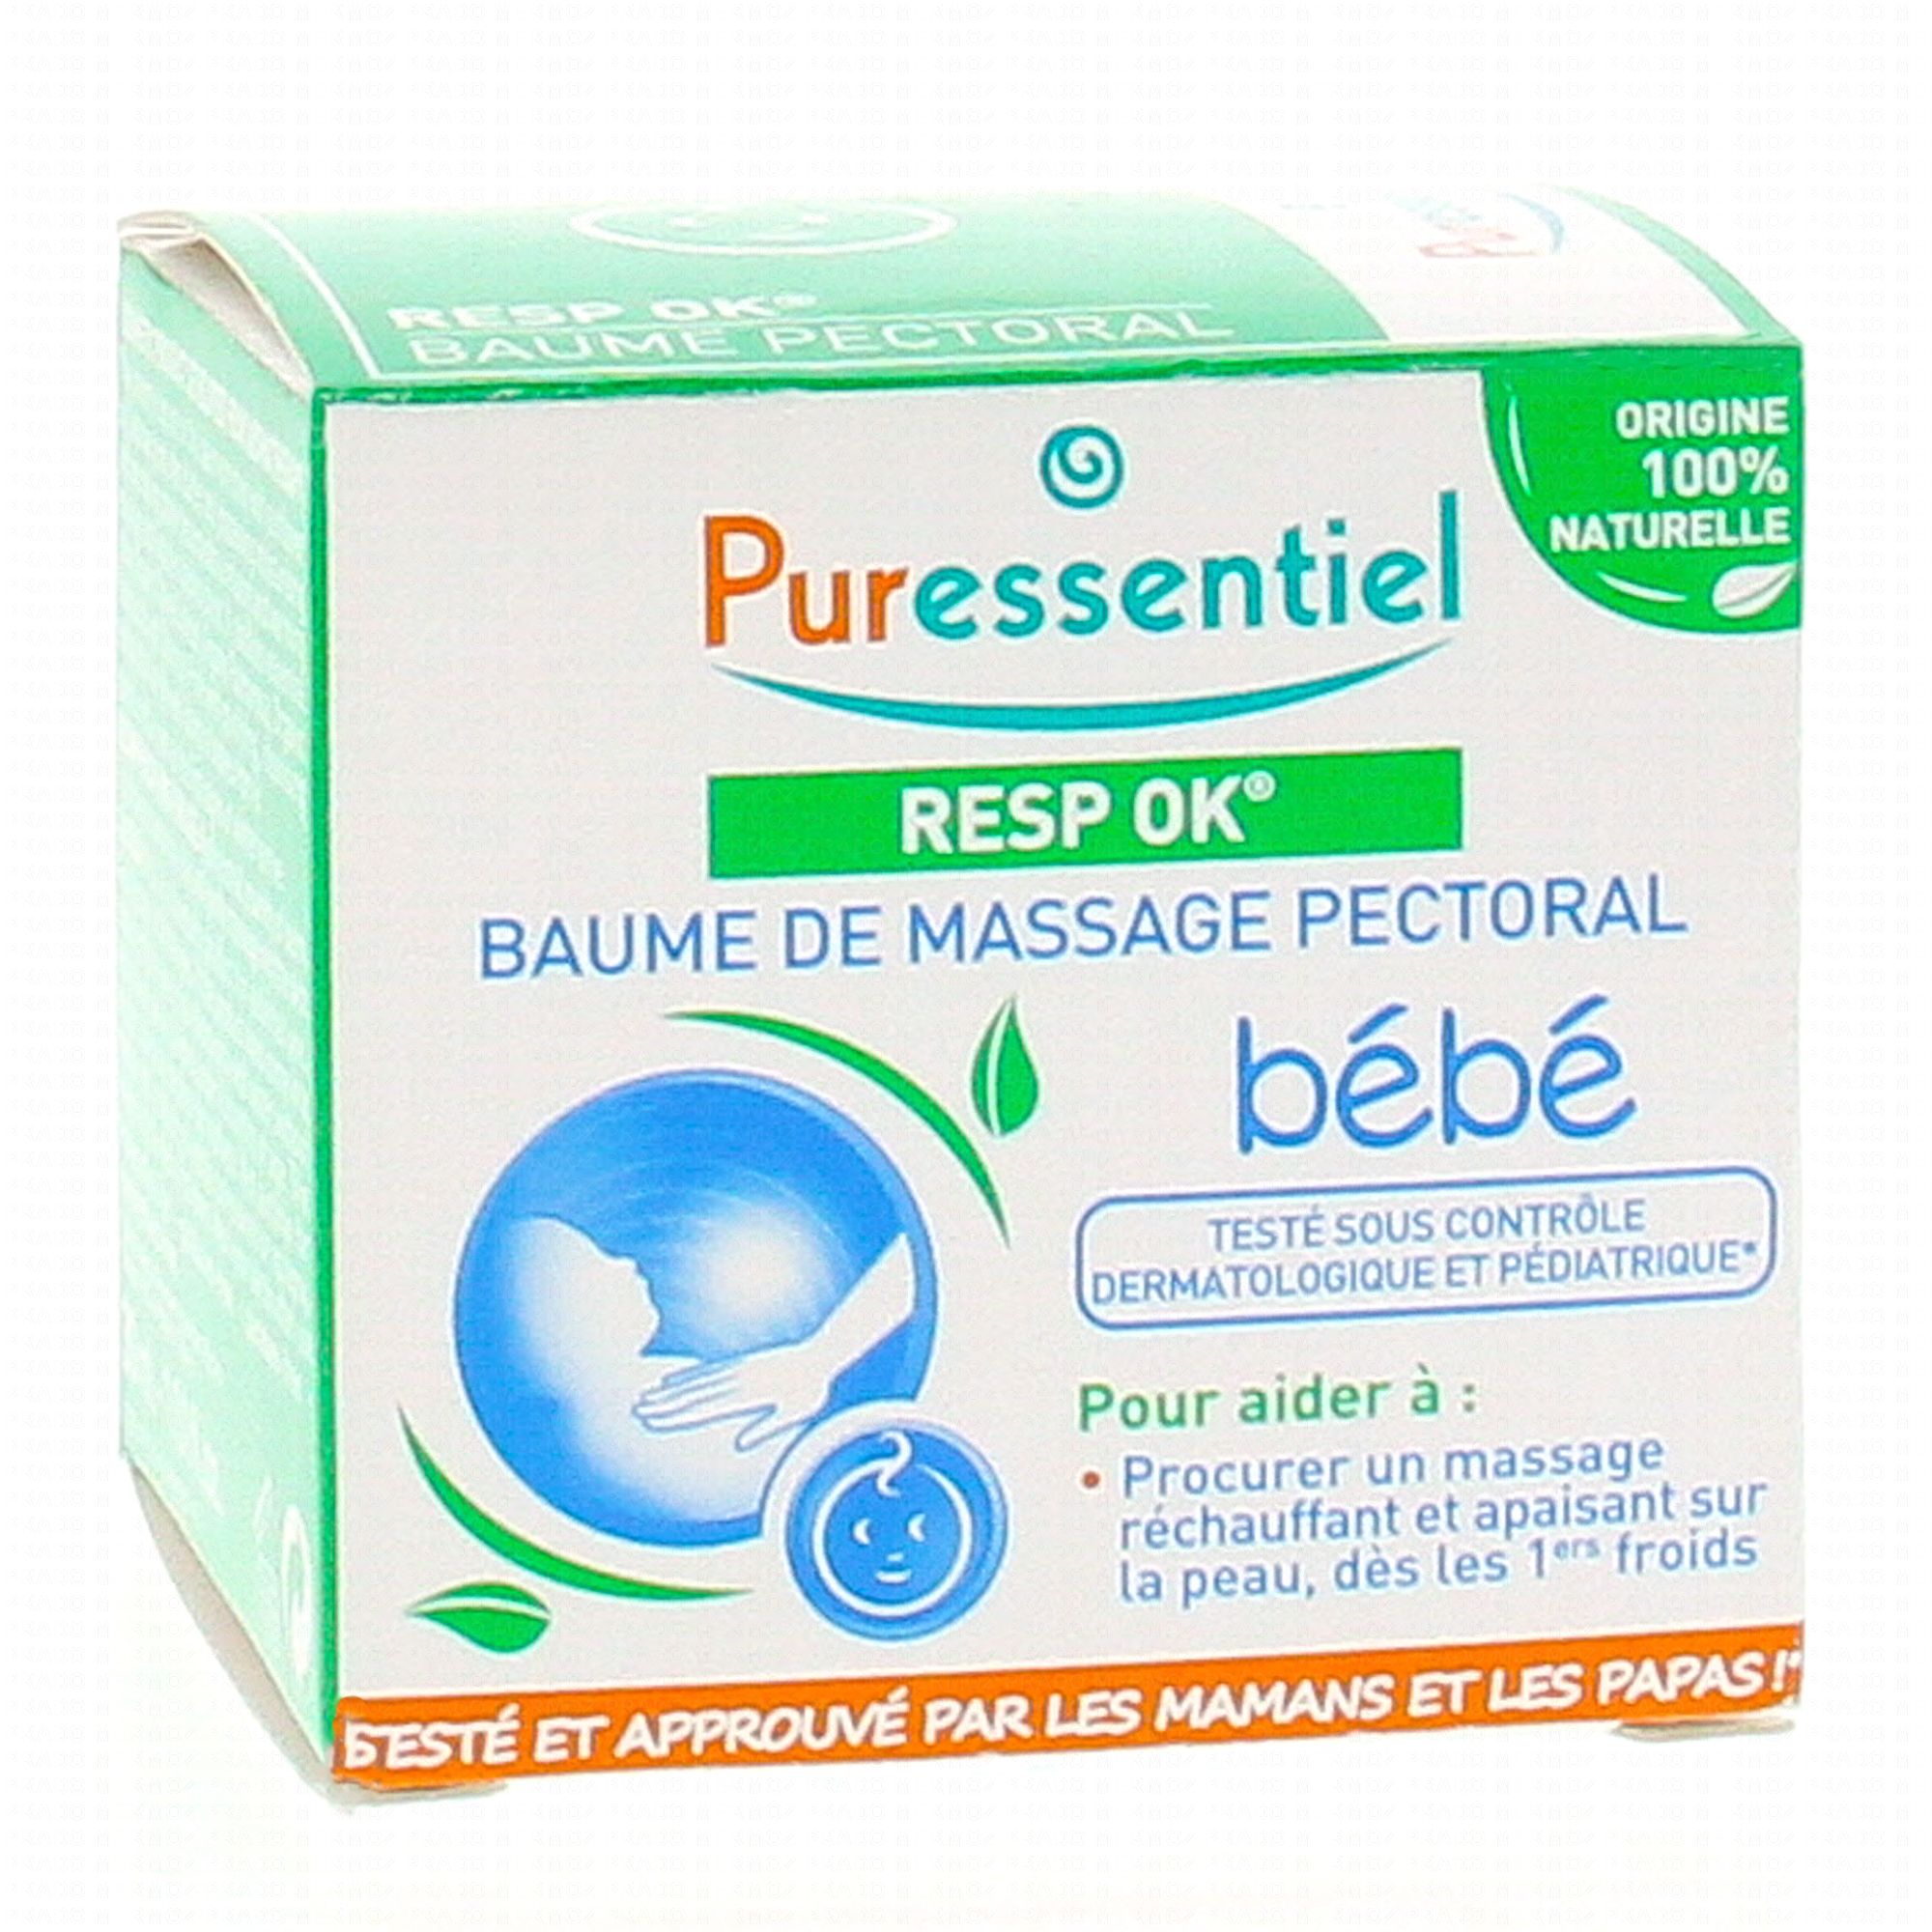 NOUVEAU PACK: Baume de massage pectoral Bébé Resp'OK® - 30 ml - Pharmacie  de la Poste